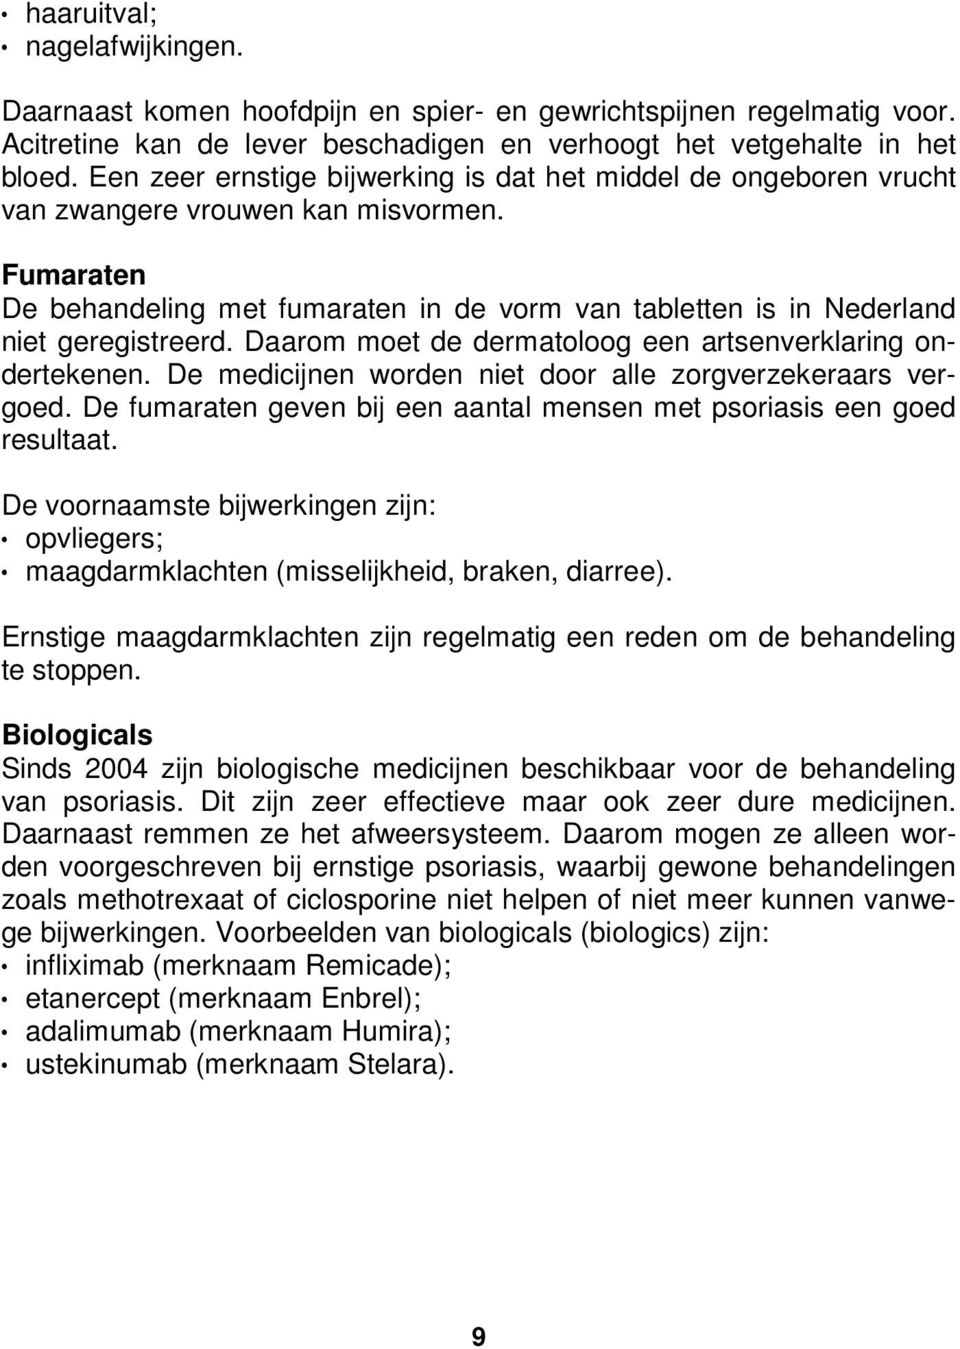 Fumaraten De behandeling met fumaraten in de vorm van tabletten is in Nederland niet geregistreerd. Daarom moet de dermatoloog een artsenverklaring ondertekenen.